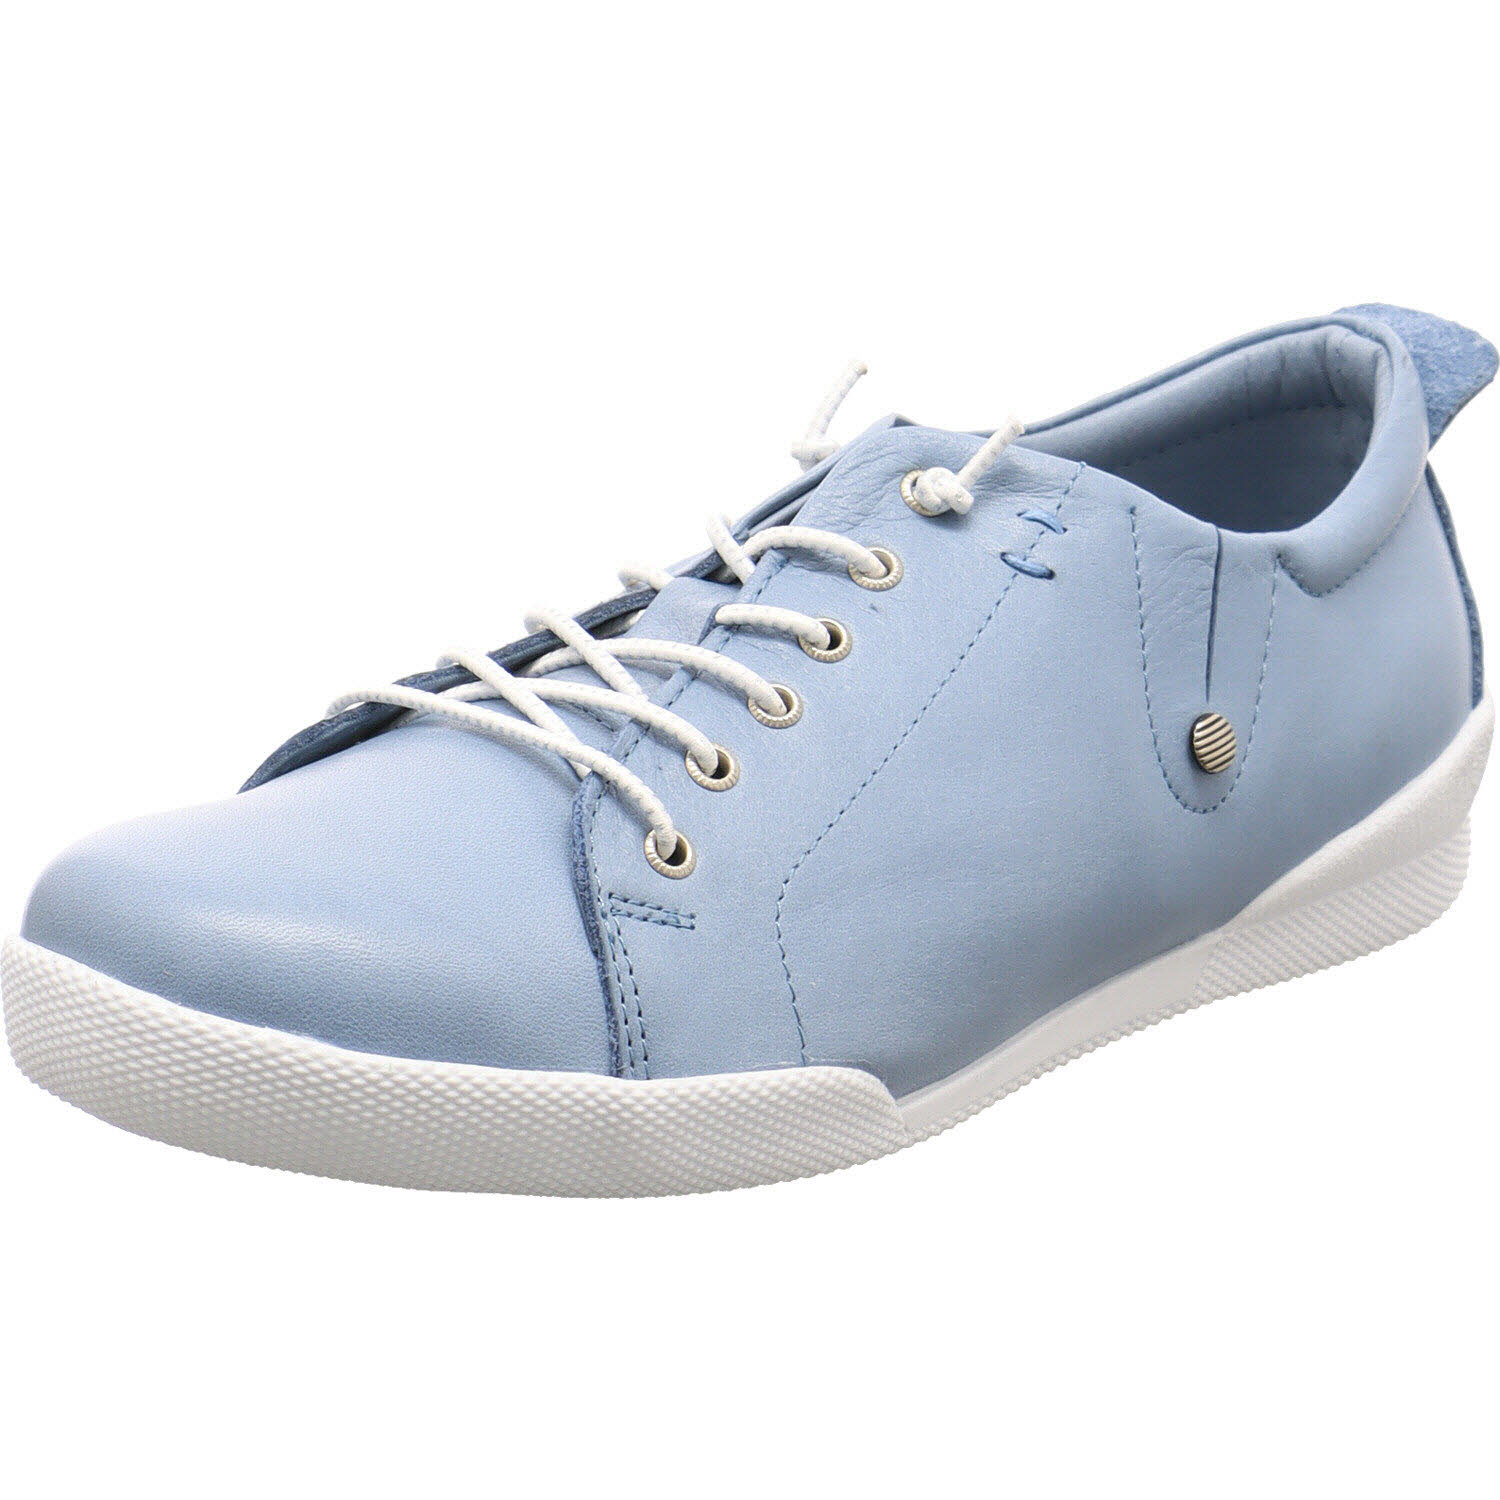 Damen Sneaker low von Andrea Conti auch in Blau erhältlich